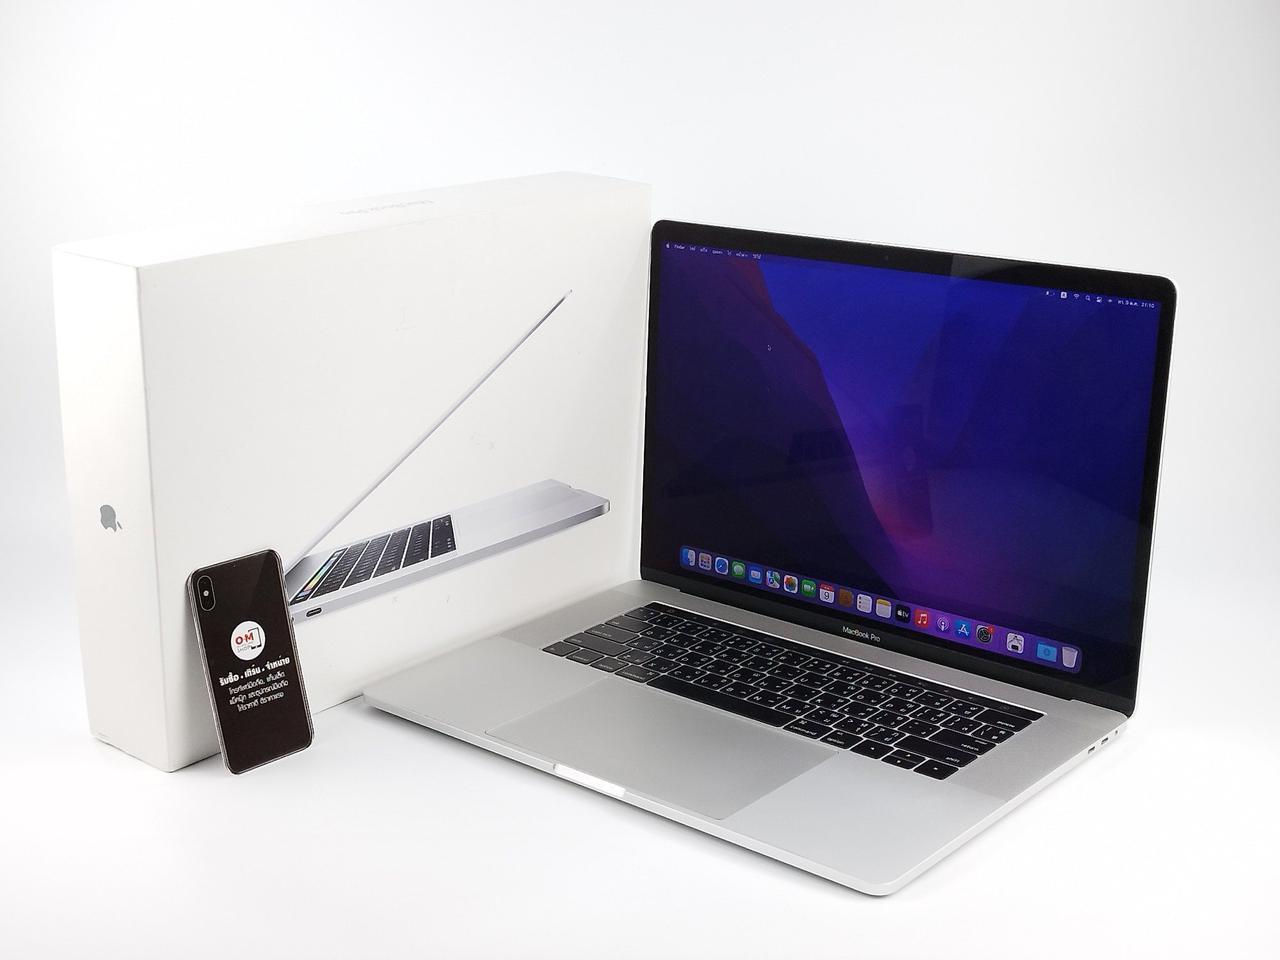 ขาย/แลก Macbook Pro 15 inch 2016 Touchbar /2.7 GHz Core i7 /Ram16 /SSD512 / ศูนย์ไทย สวยครบกล่อง เพียง 18900.-